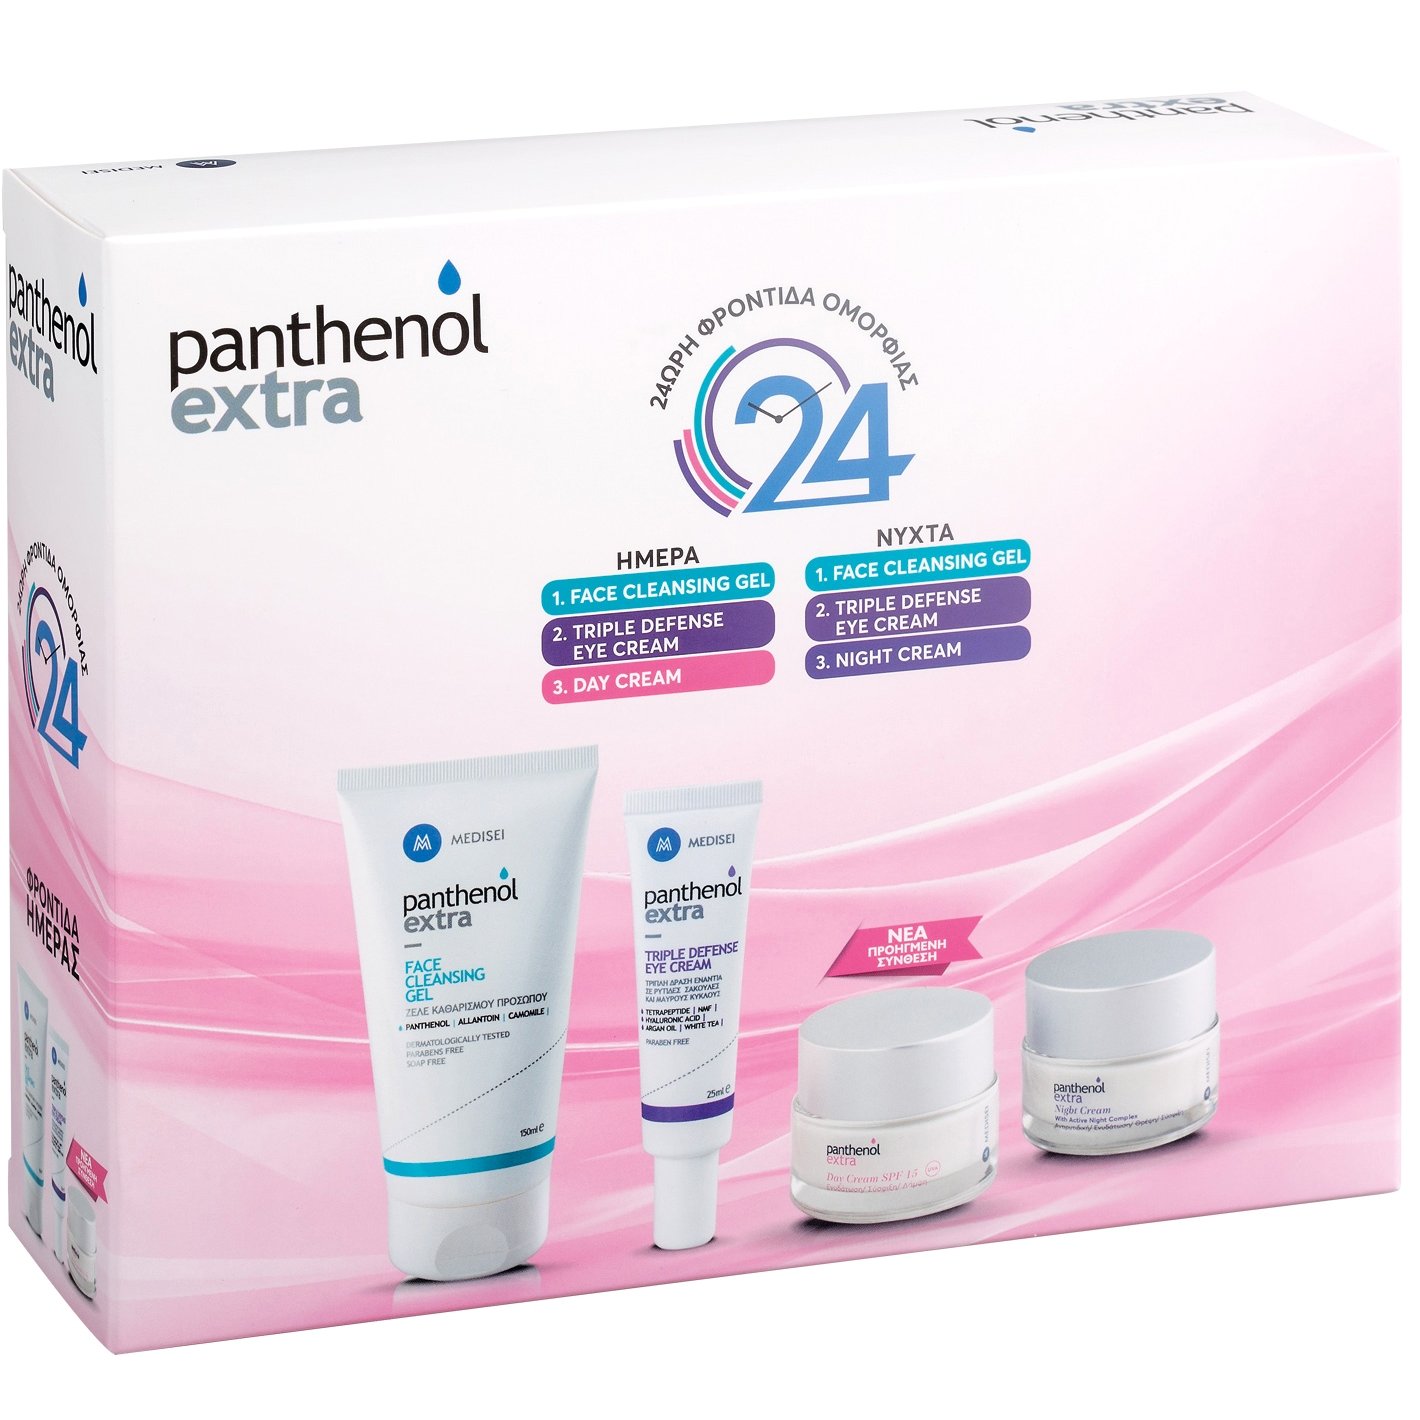 Medisei Panthenol Extra Promo Face Cleansing Gel 150ml & Triple Defense